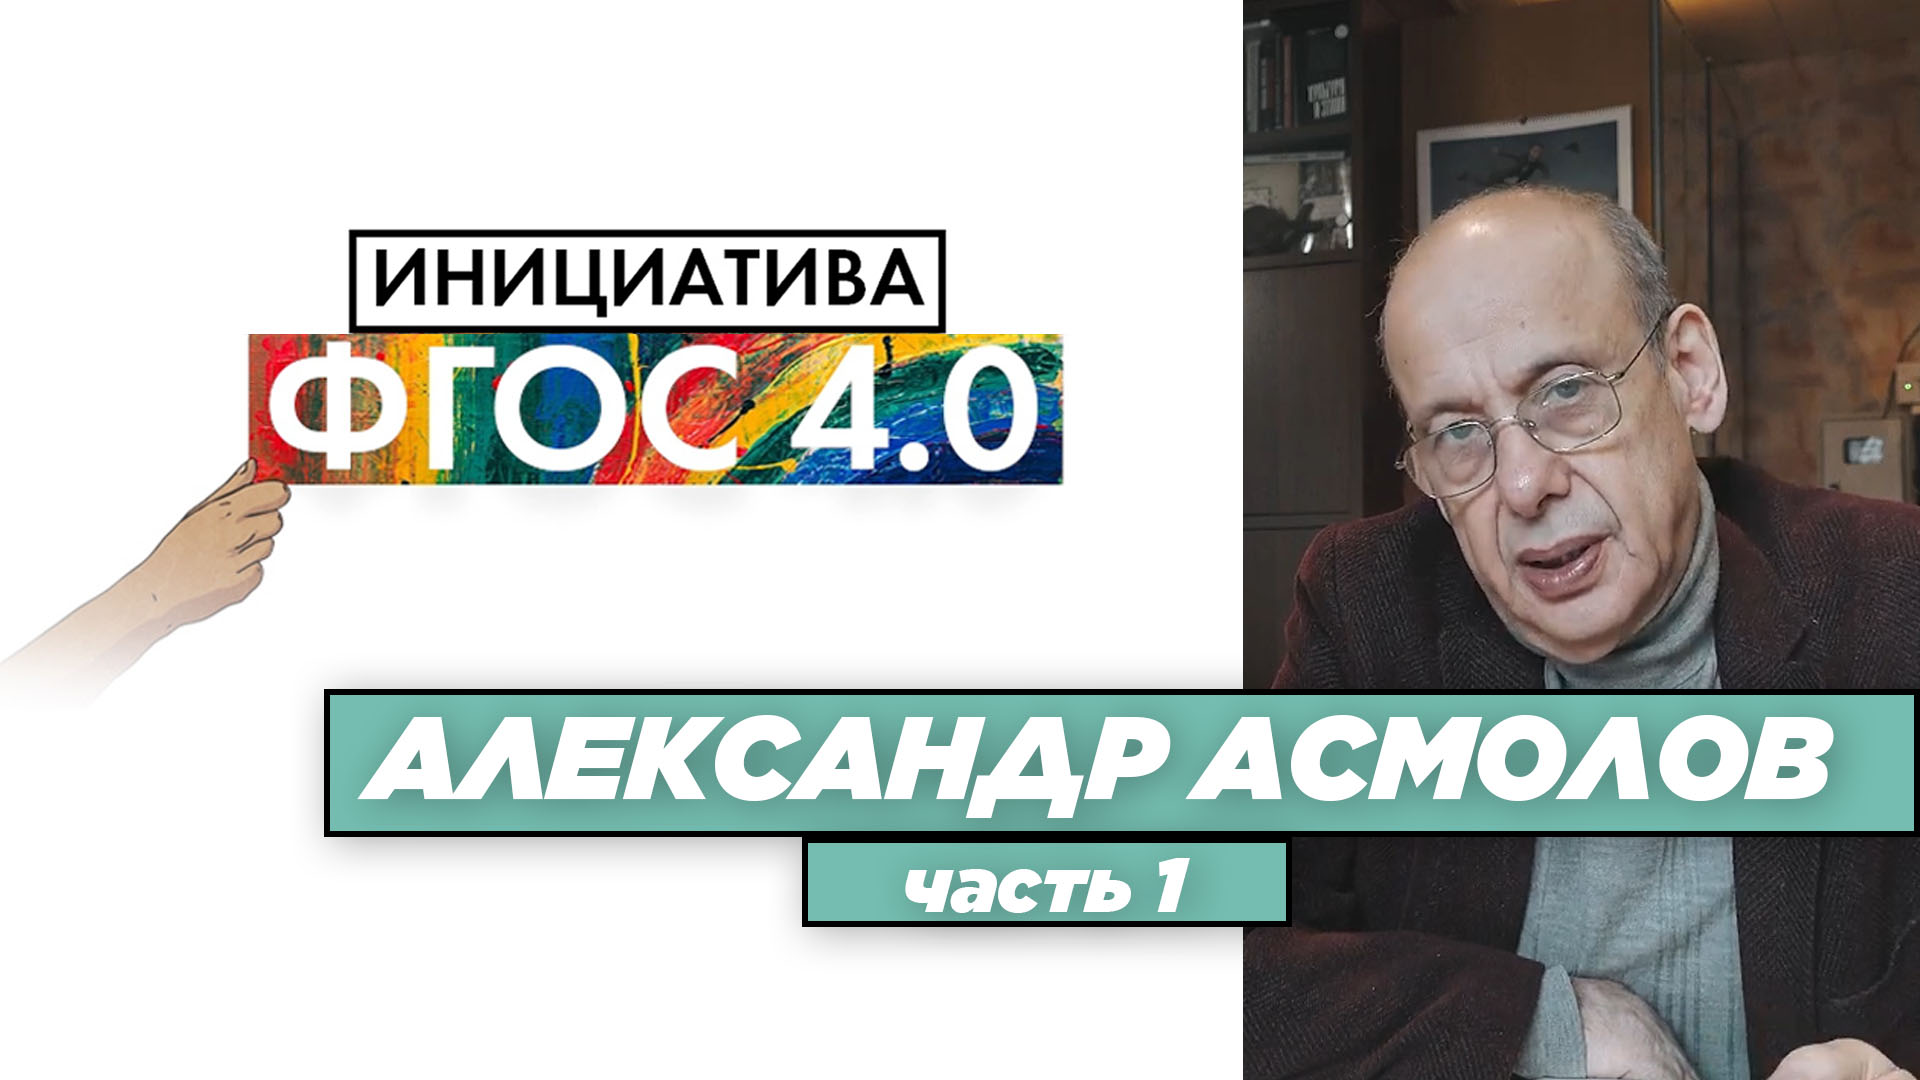 Александр Асмолов:  «Результаты ФГОС 4.0».  #1